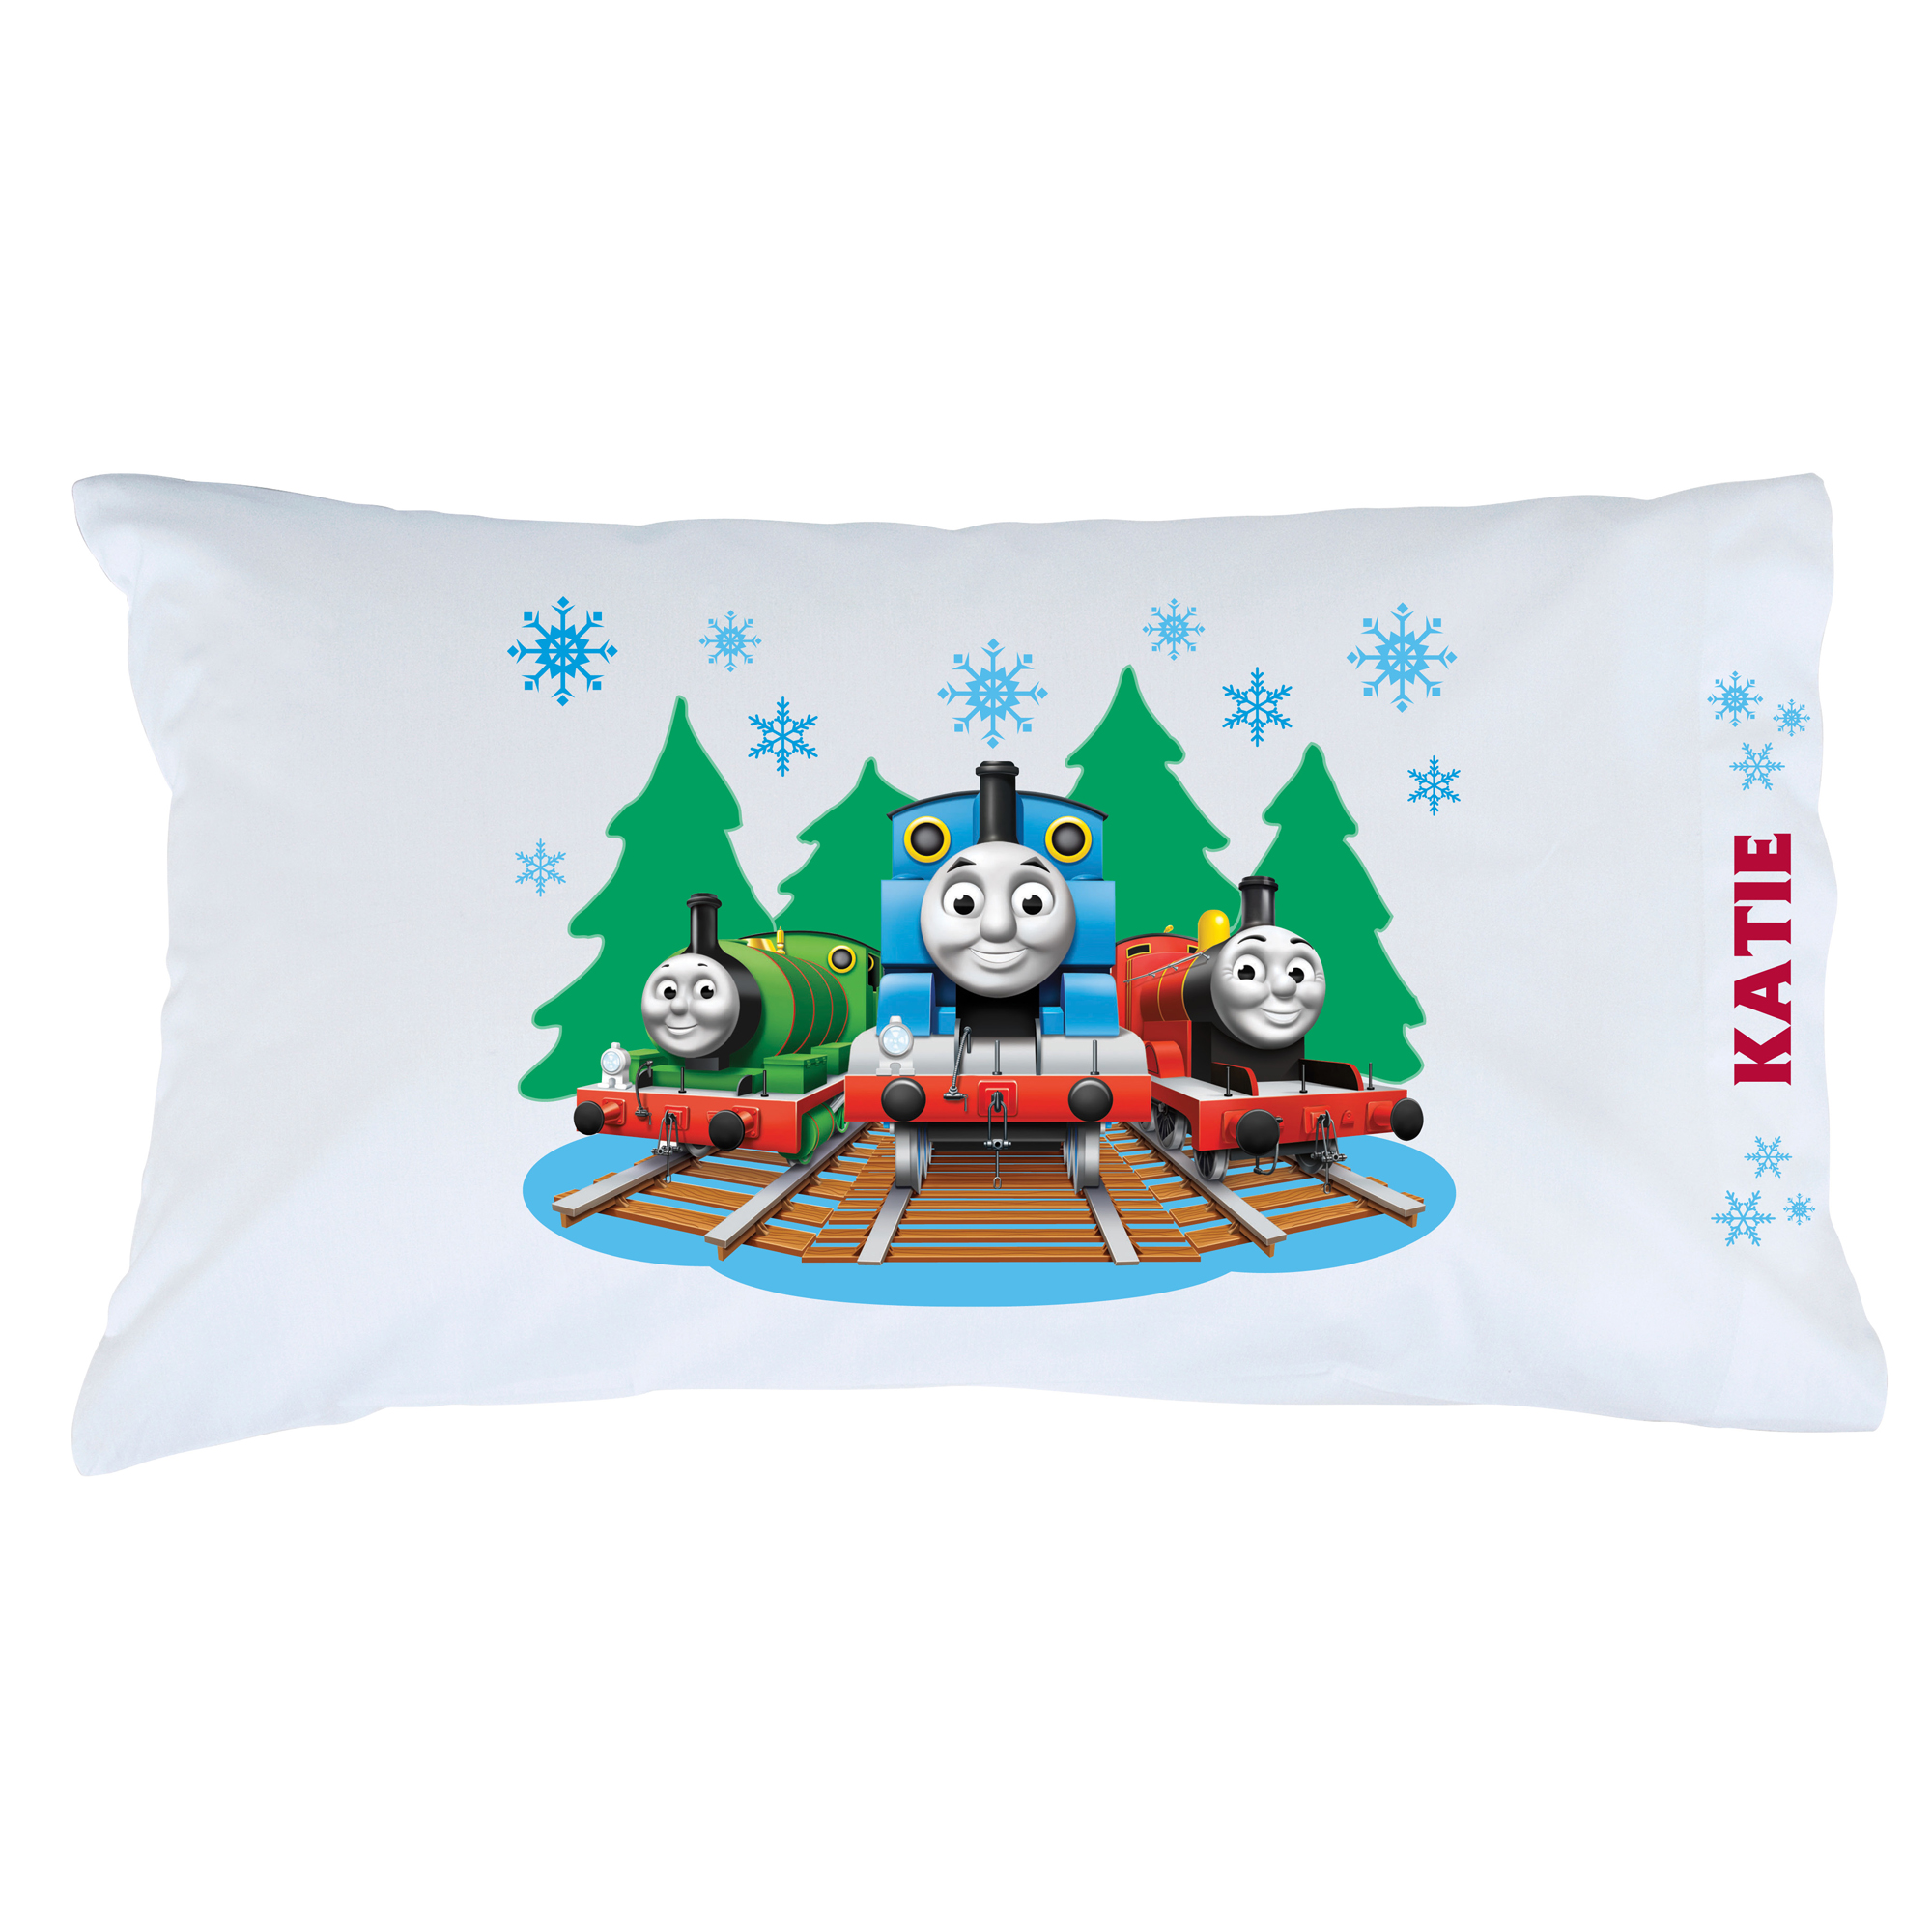 Thomas & Friends Snowfall Pillowcase